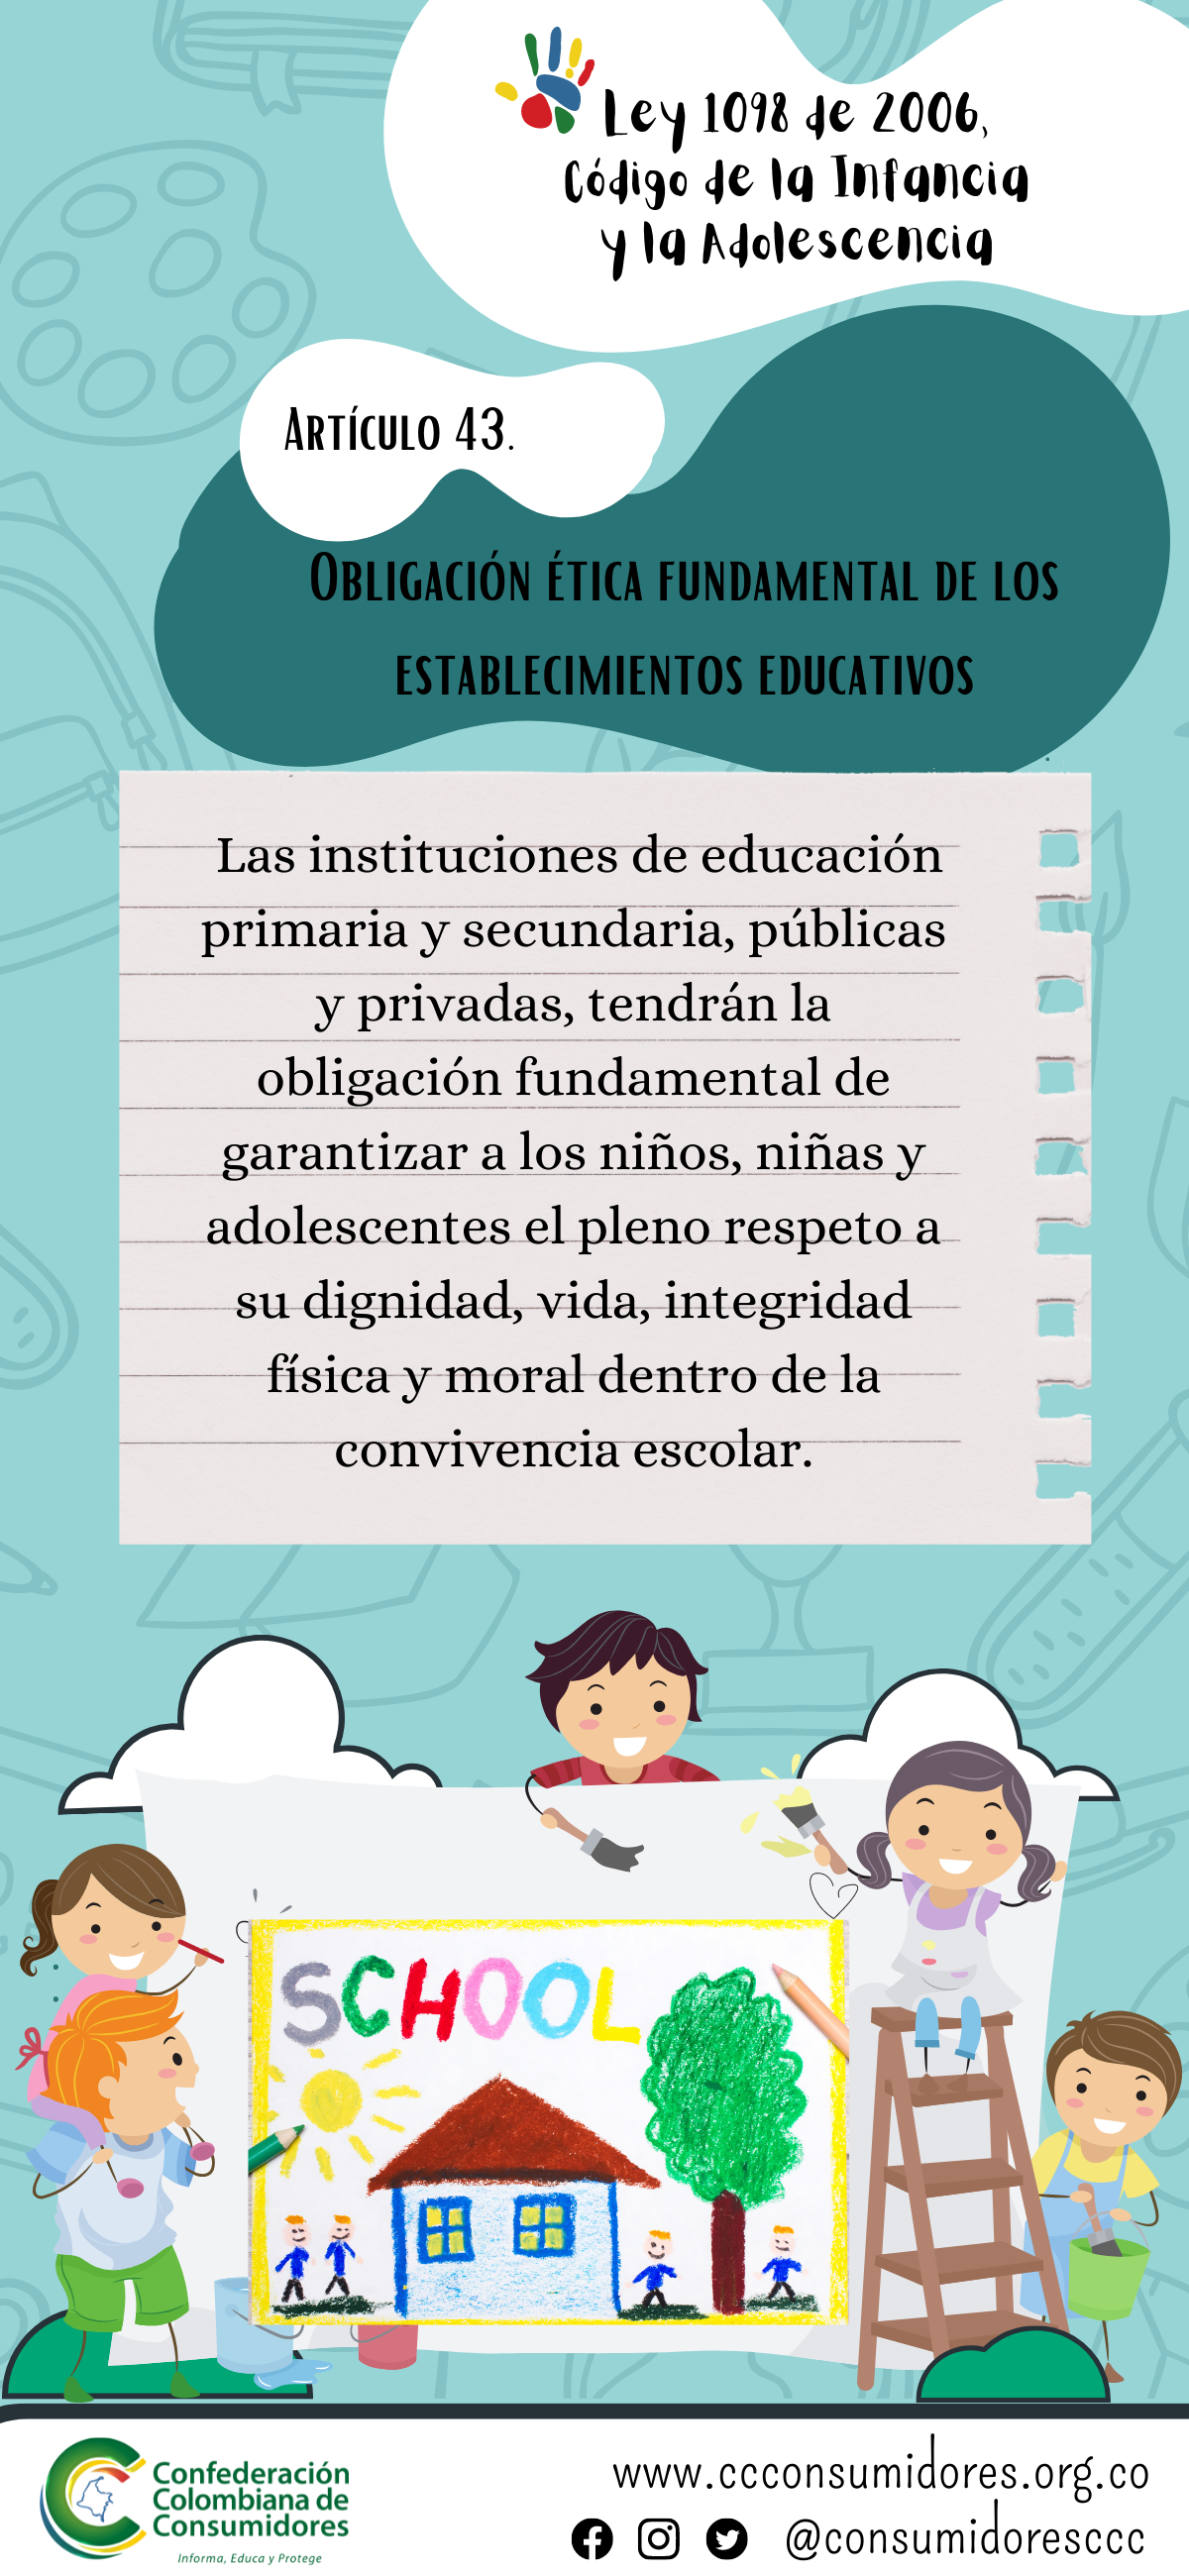 Artículo 43 Código de Infancia y Adolescencia. Obligación ética fundamental de los establecimientos educativos